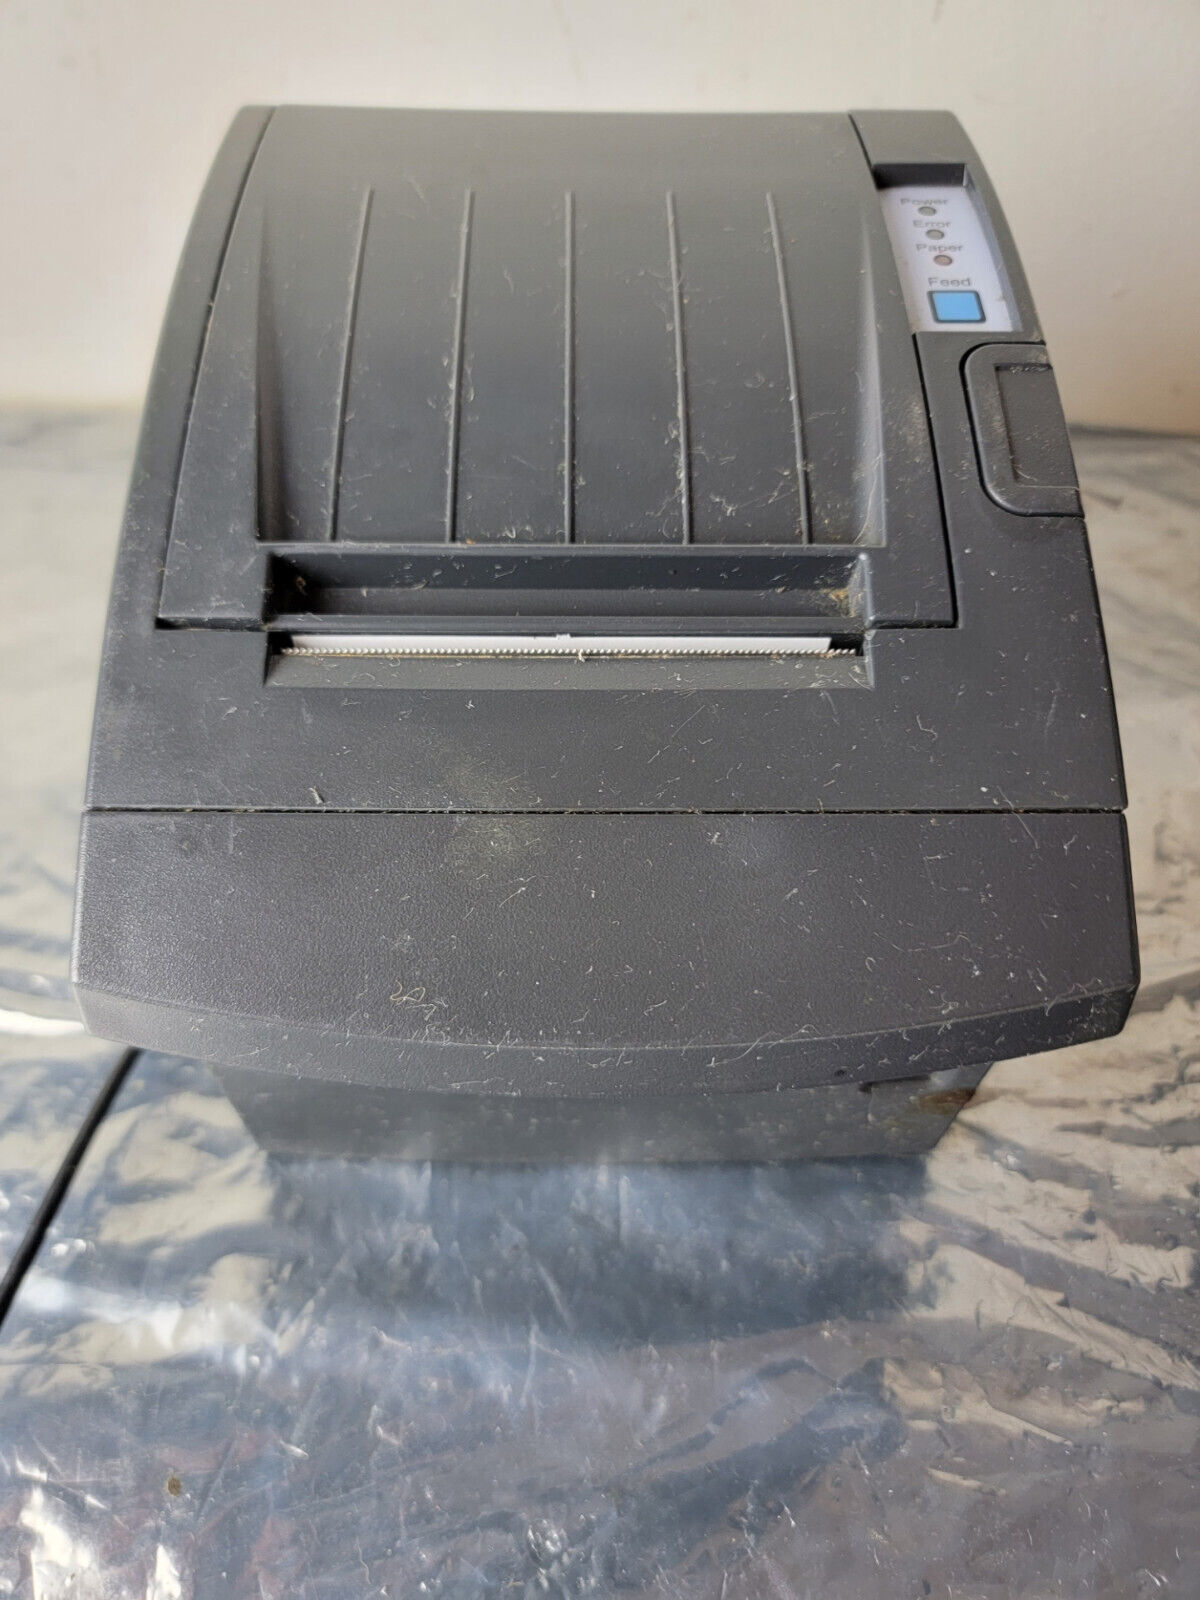 BIXOLON SRP-350PlusII SRP-350PlusIICOSG POS Thermal Receipt Printer - Black - $83.76